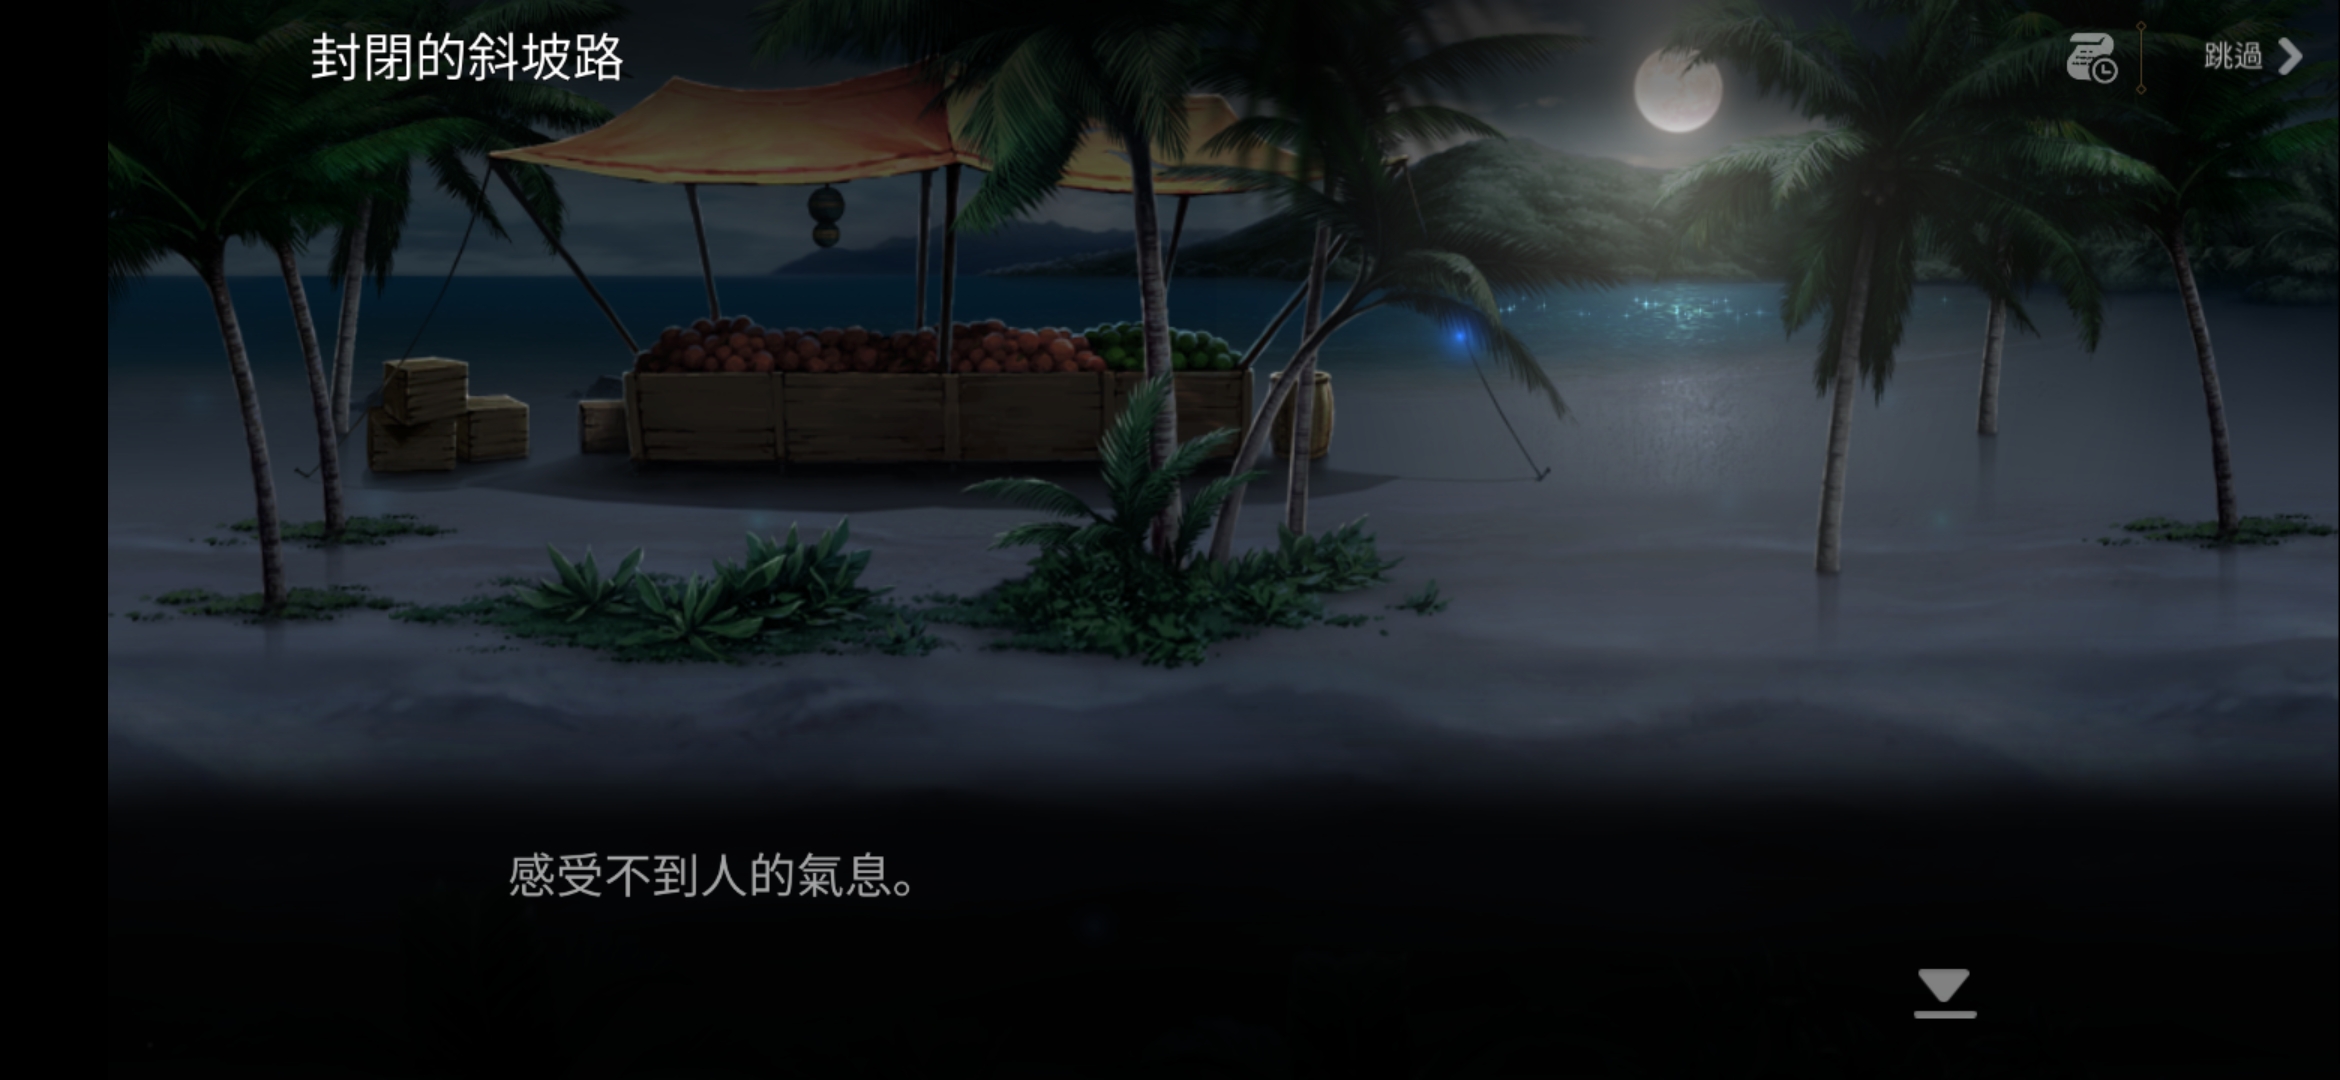 【夏活三期】蓝圣十字会与奇怪的岛屿 活动攻略